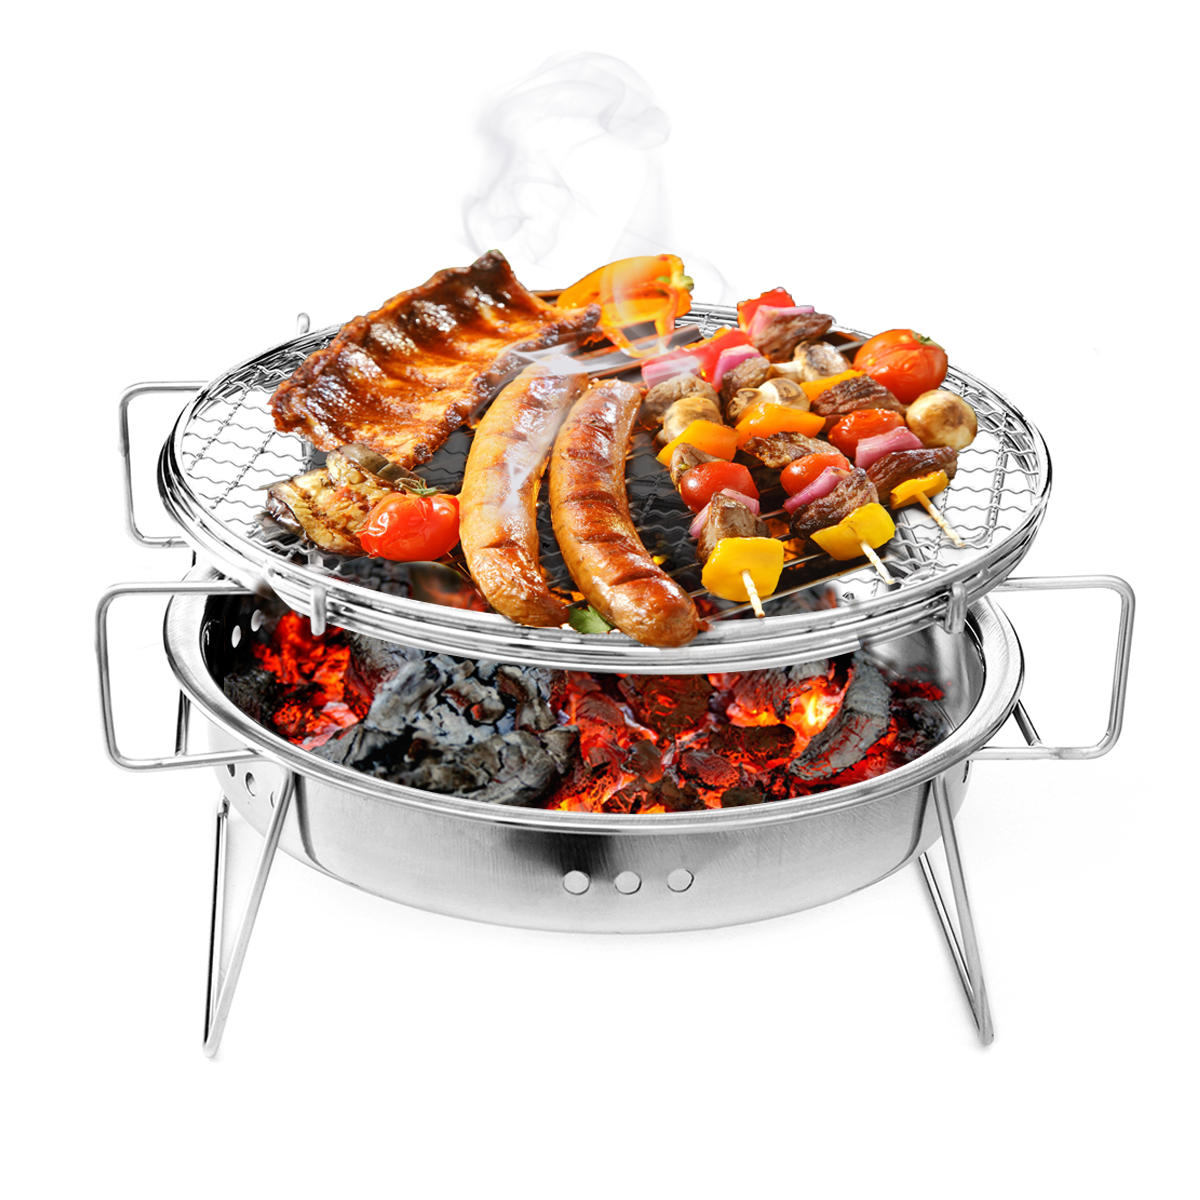 raagbare opvouwbare barbecue BBQ houtskoolgrill van roestvrij staal voor patio, kamperen, picknicken en koken